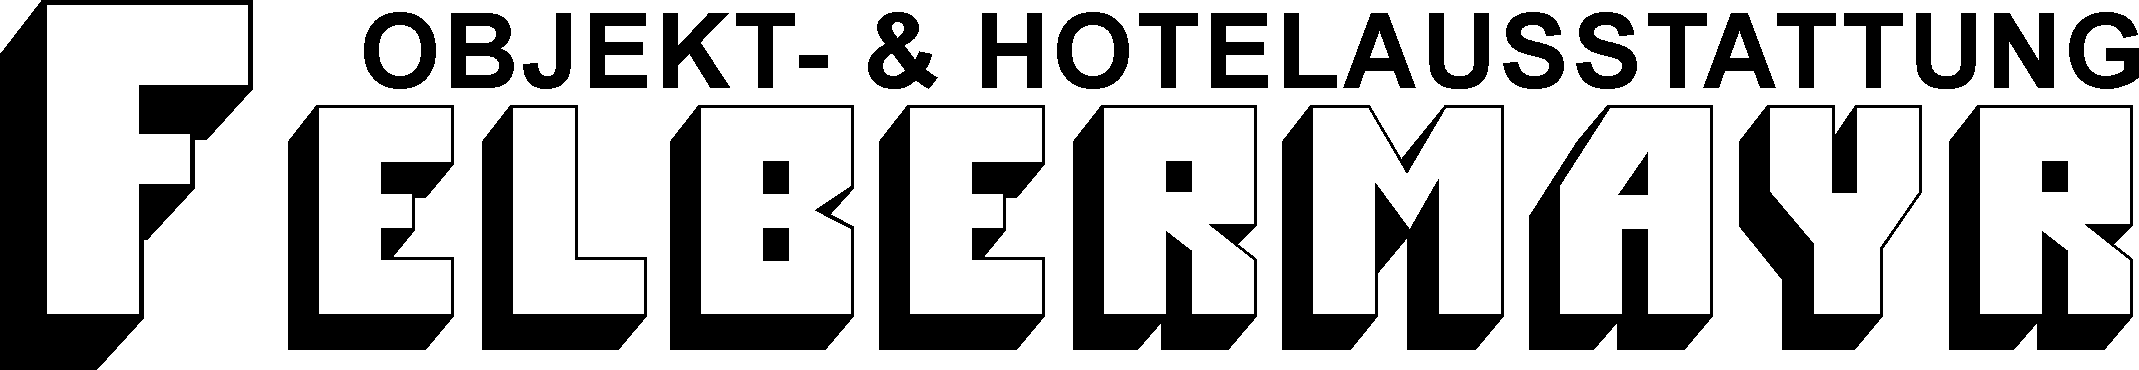 Logo Objekt- & Hotelausstattung Felbermayr GmbH